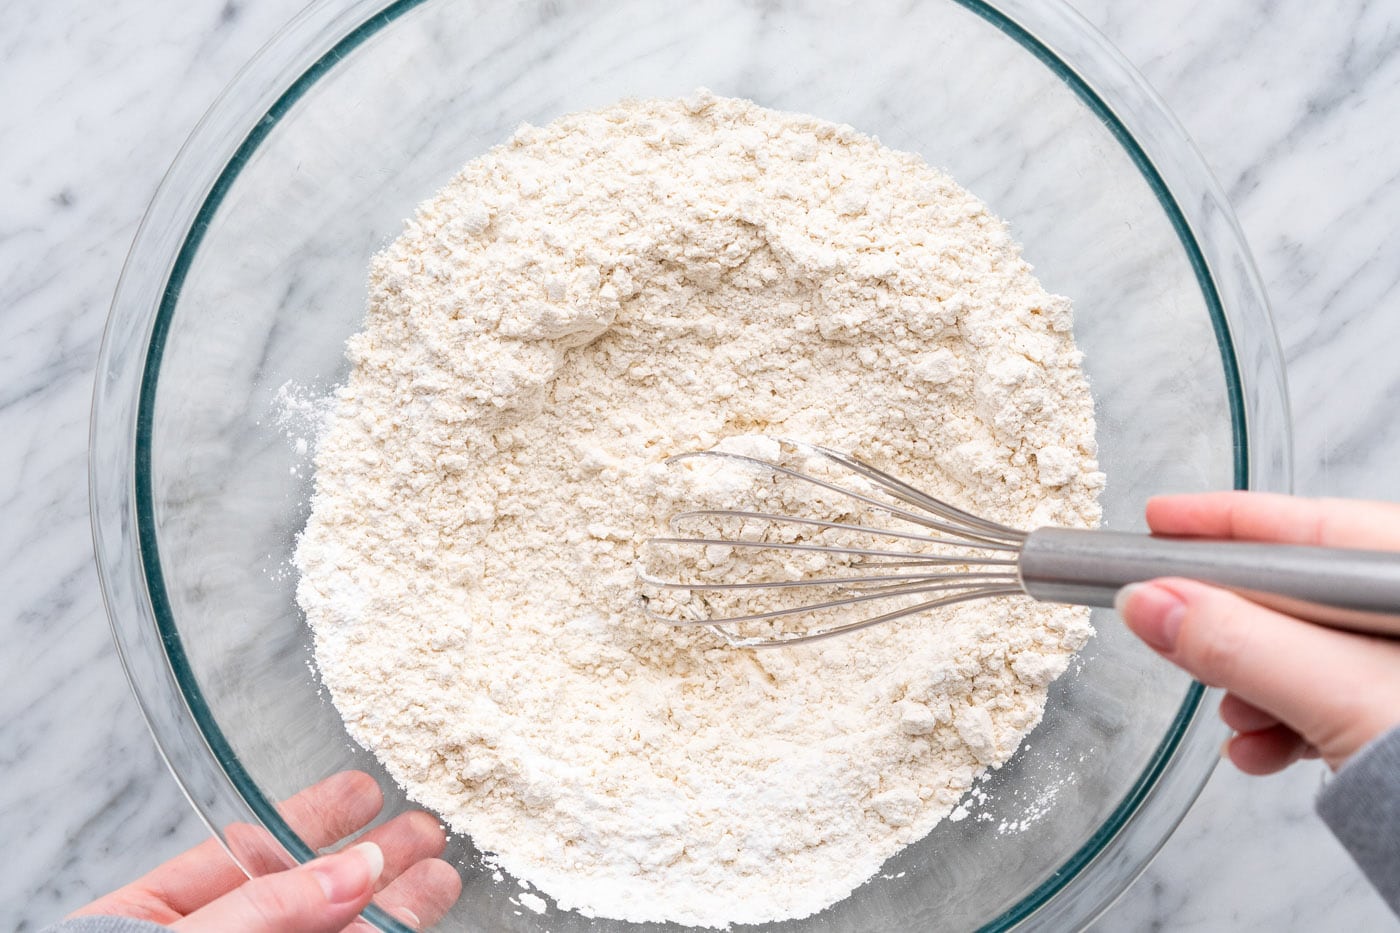 whisking flour, baking powder, baking soda, and salt in a large bowl